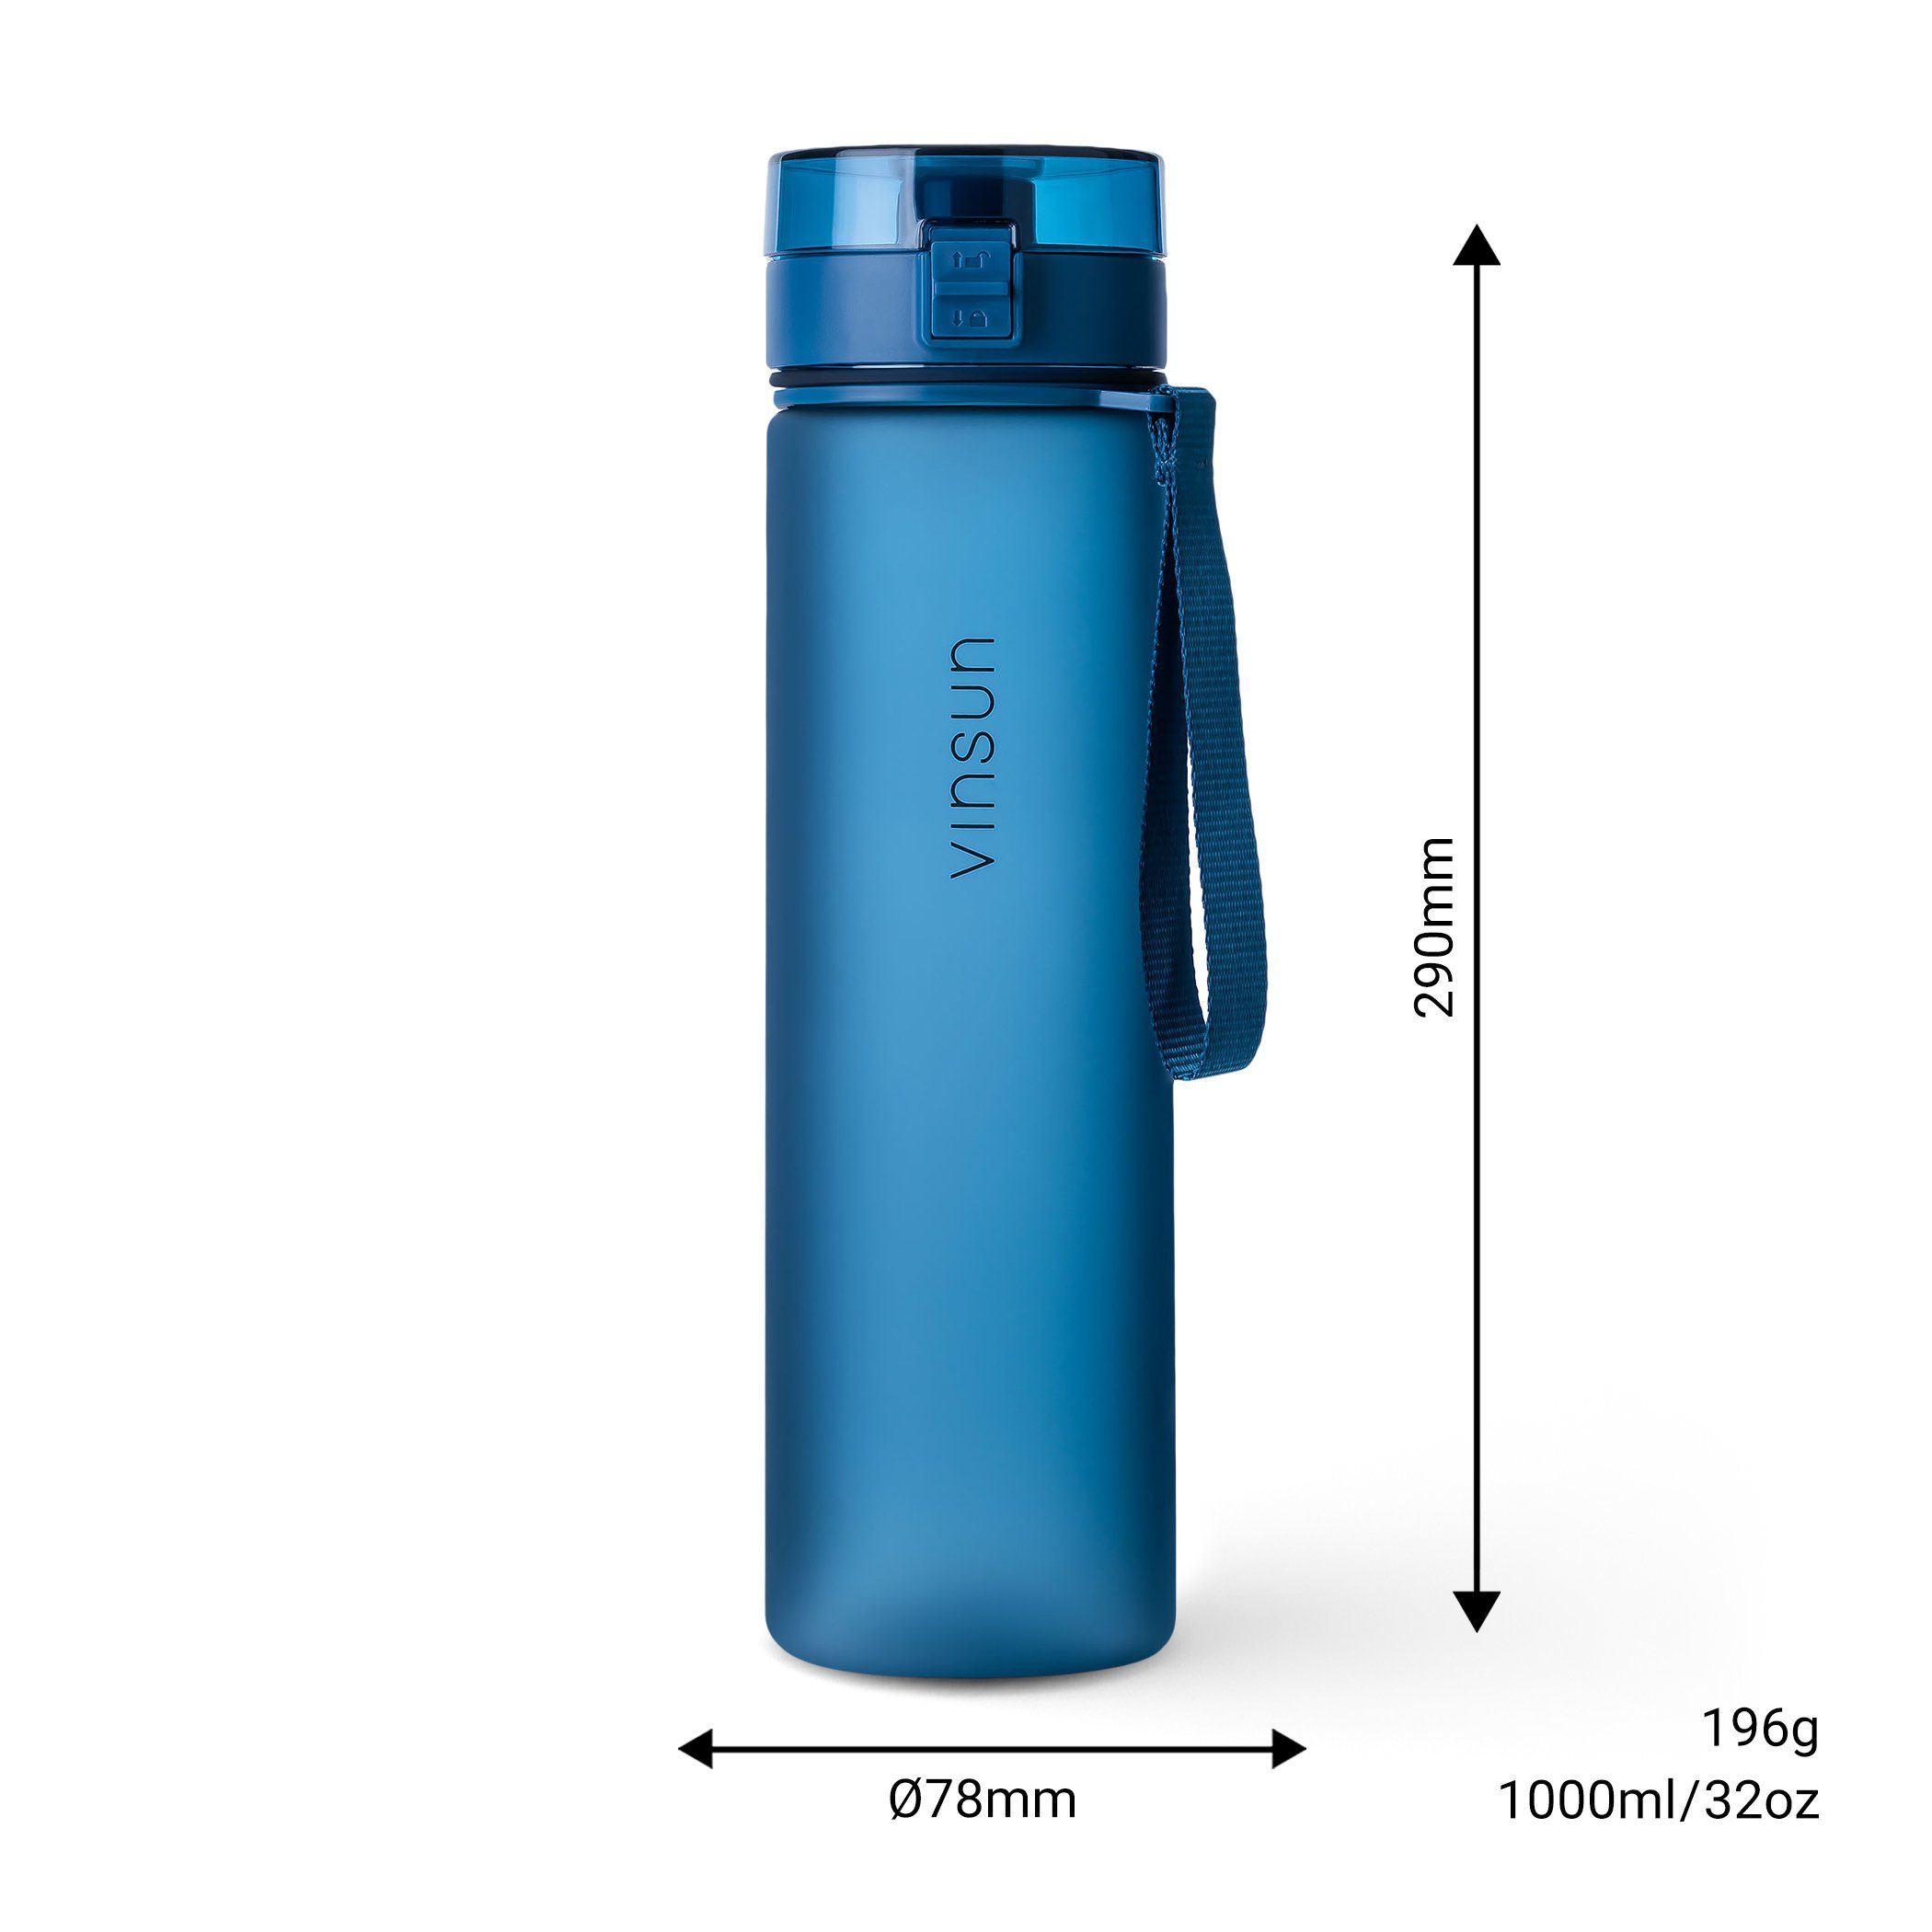 Vinsun Trinkflasche - auslaufsicher frei, BPA Kohlensäure, 1L, Blau, geeignet, Kohlensäure Trinkflasche auslaufsicher Dunkel und Geschmacksneutral, Geruchs-